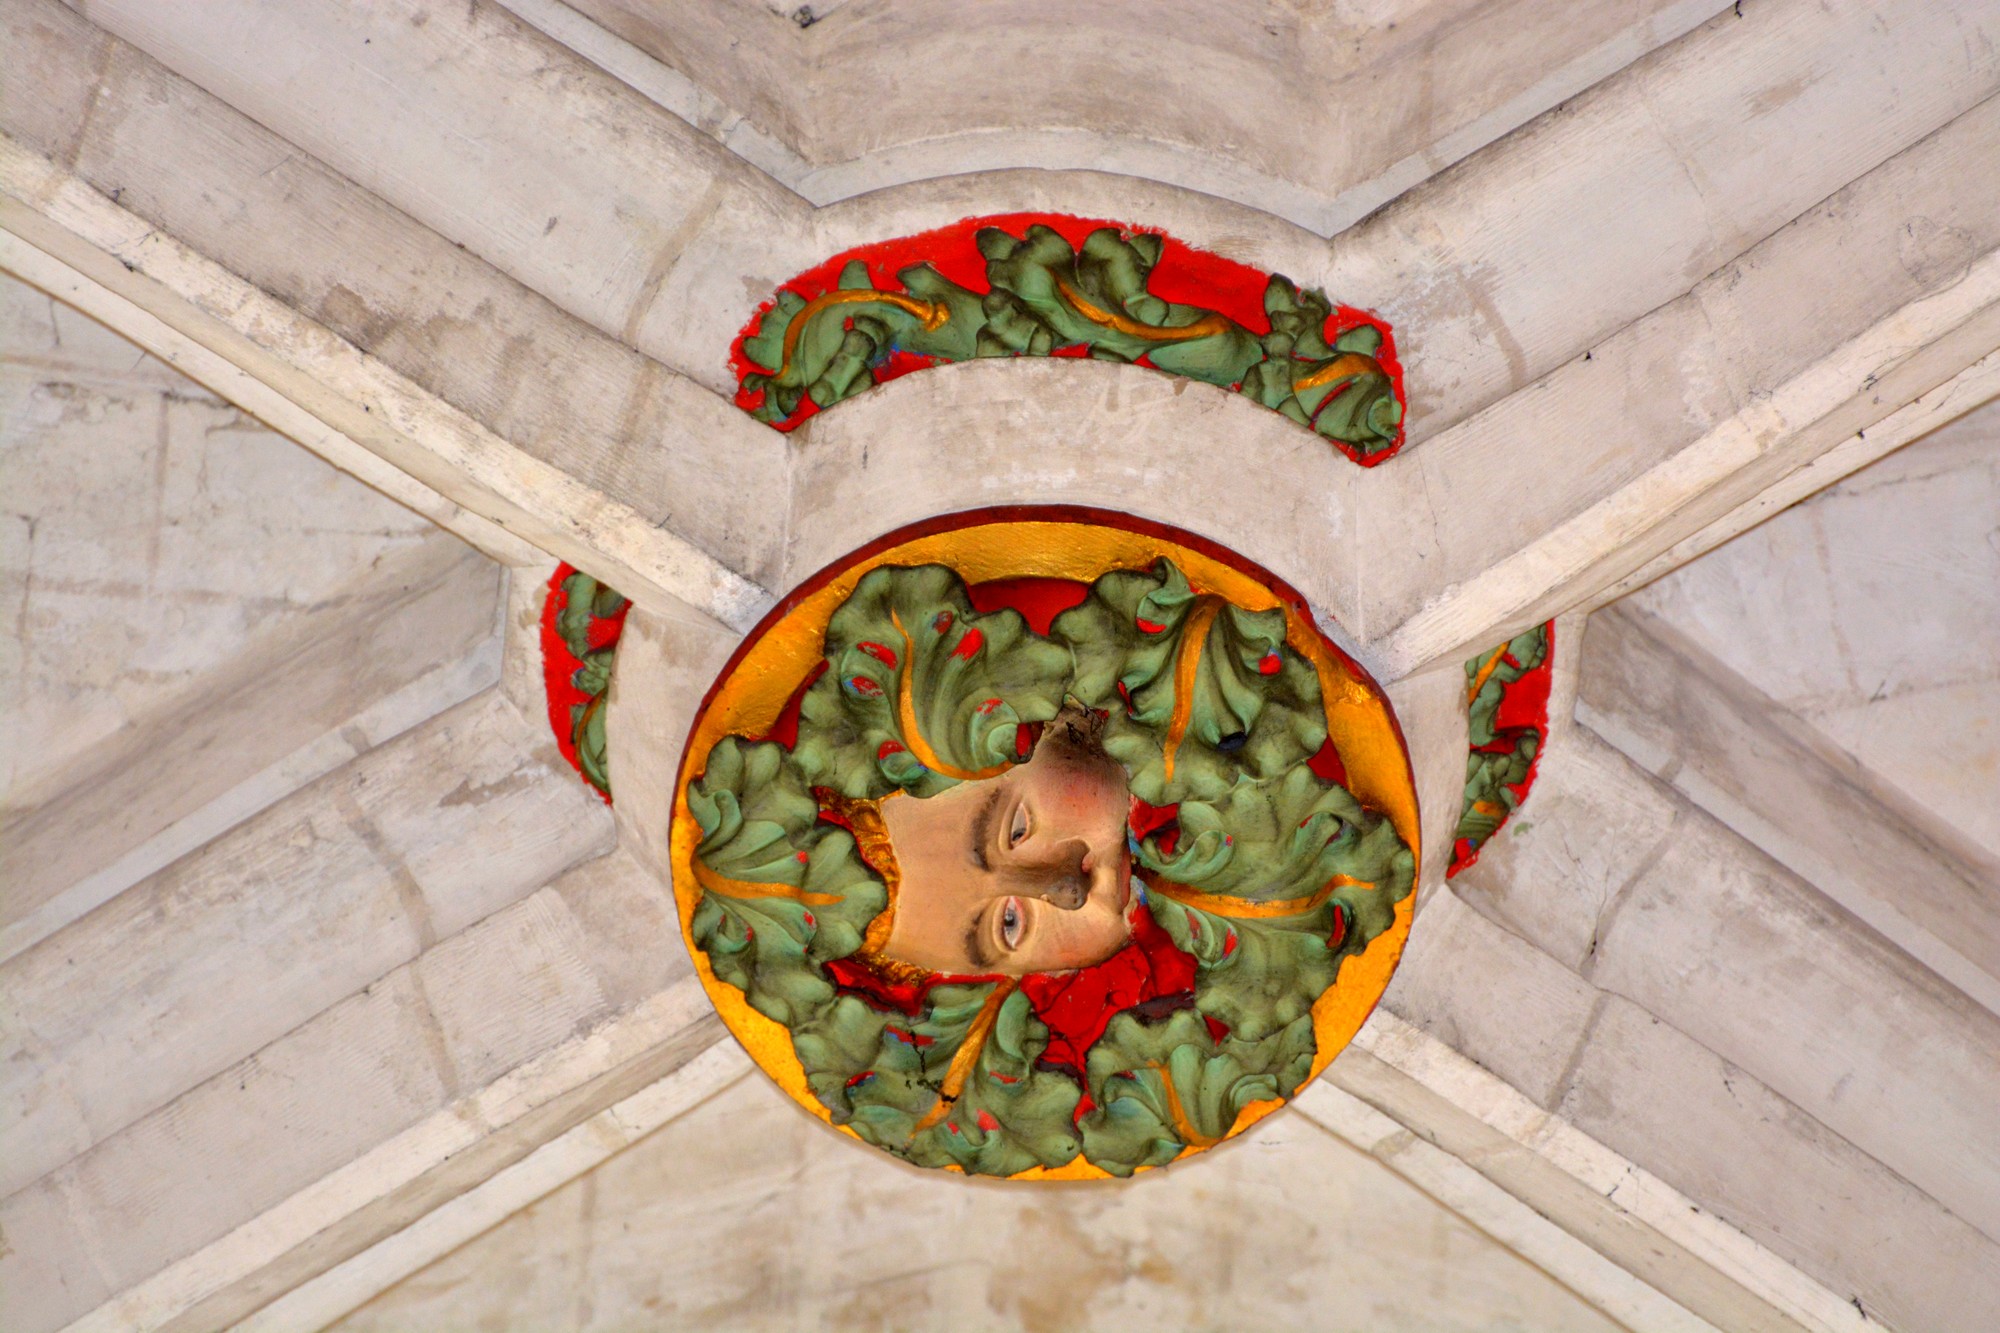 Cathédrale de Saint-Omer - Chapelle Saint-Omer aux ossements - clé de voutes